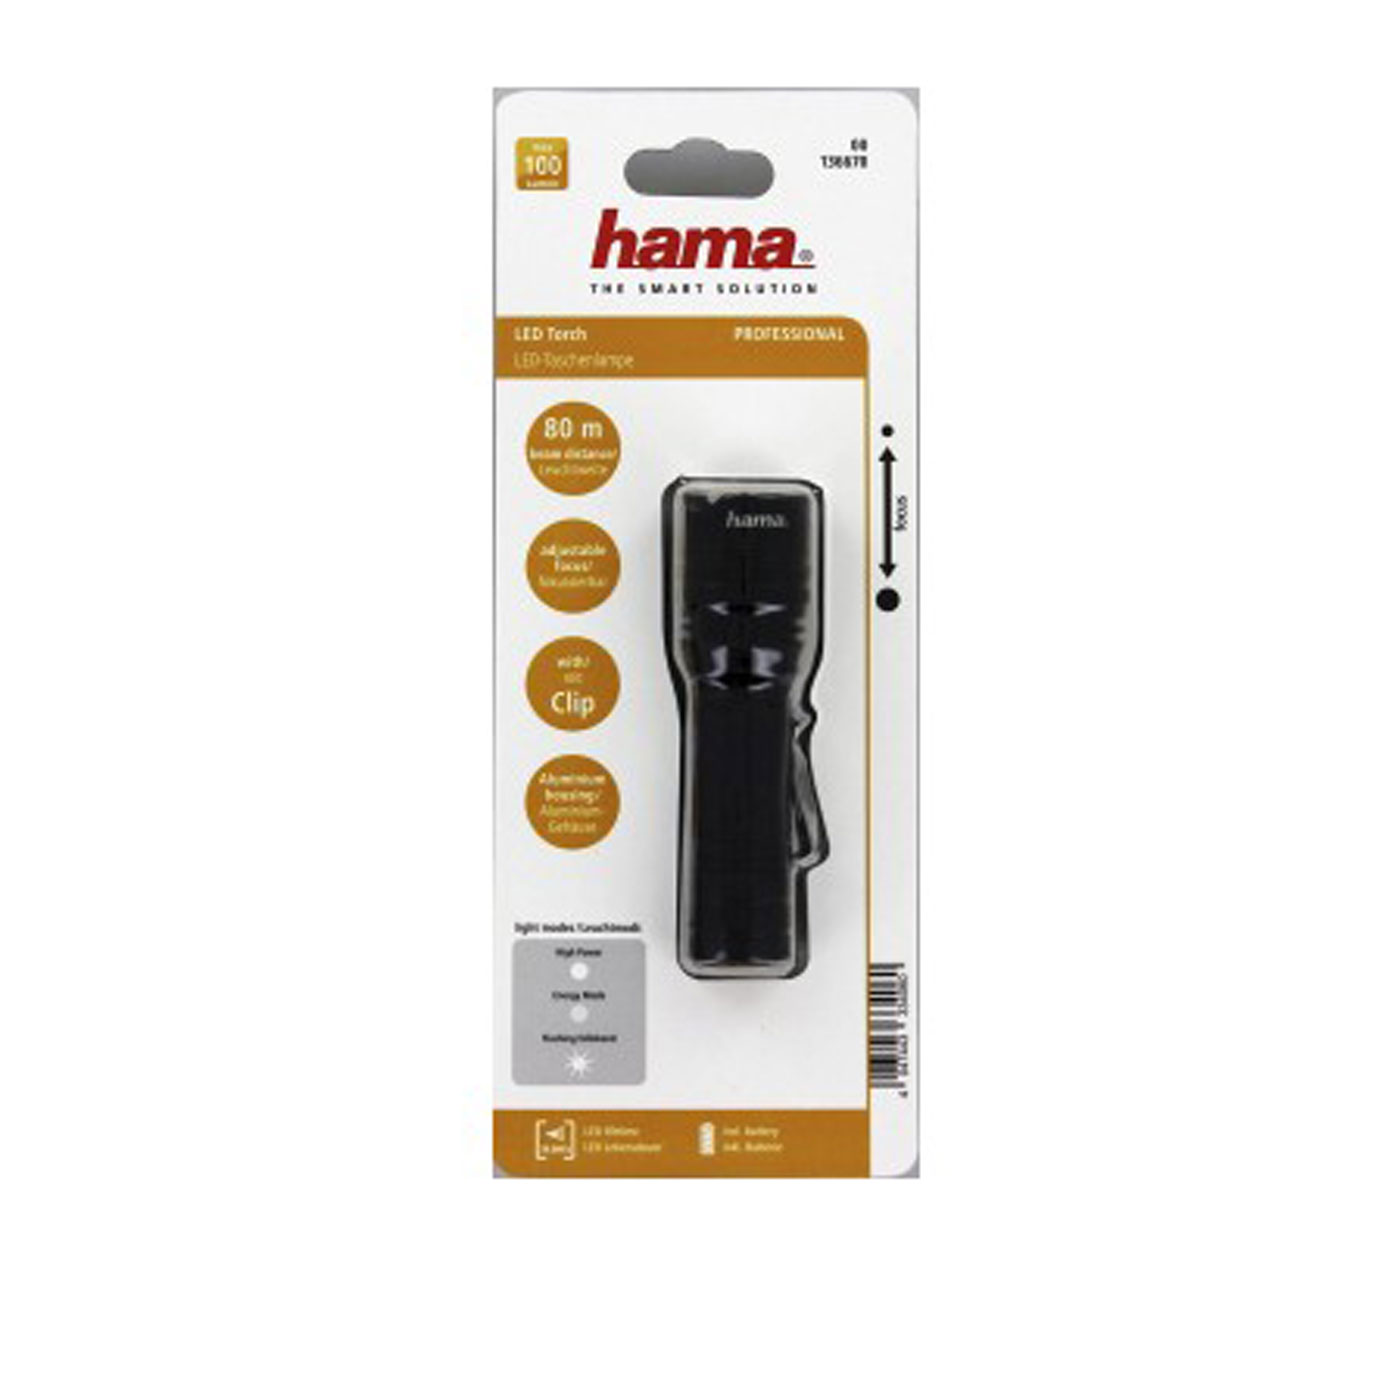 Hama LED-Taschenlampe Professional 1 | Taschenlampen | Outdoor-Ausstattung  | Zubehör | Brenner - Alles für die Fotografie